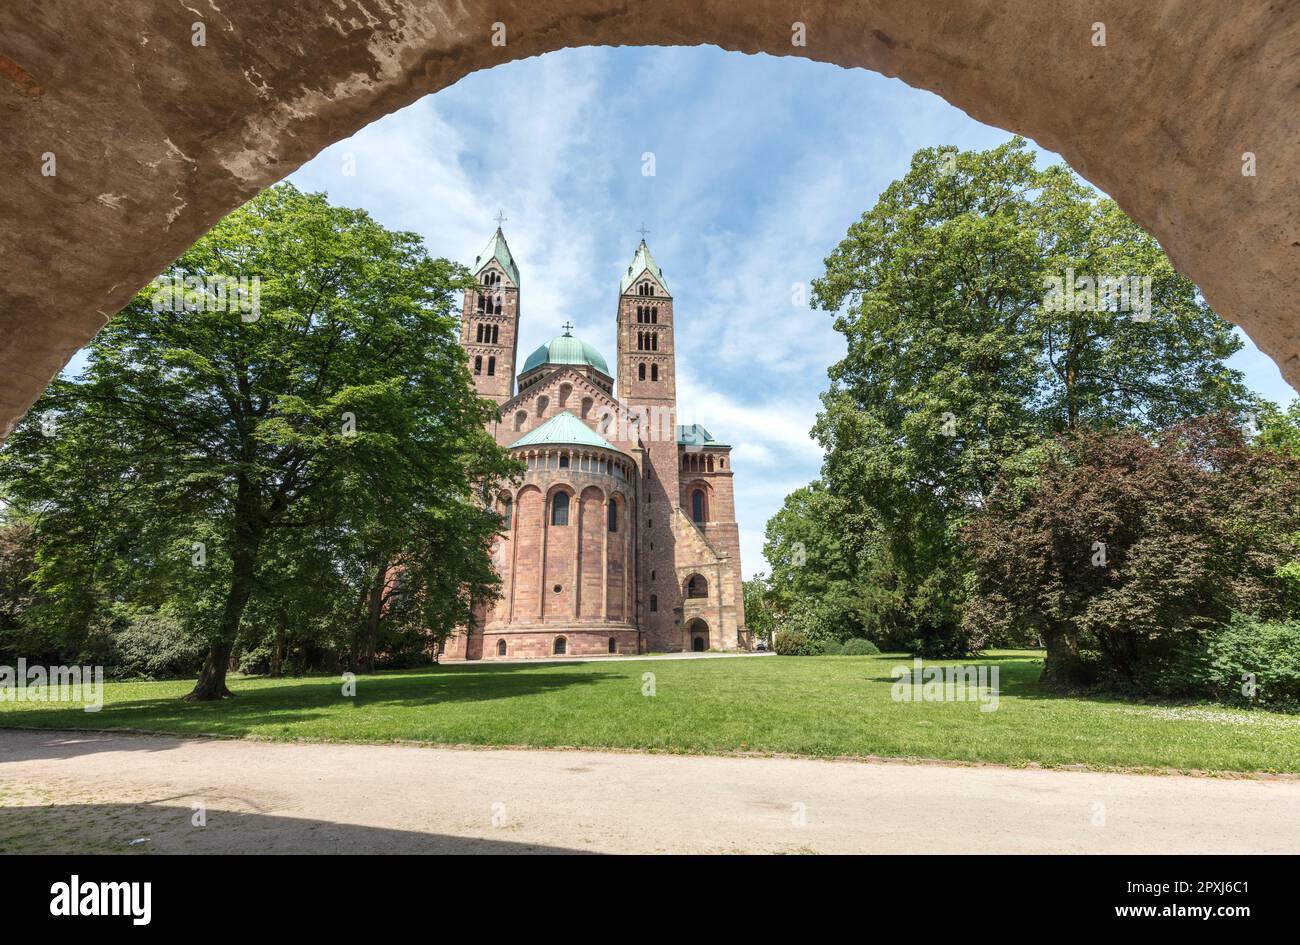 Cattedrale di Speyer (dom) o Cattedrale Imperiale Basilica dell'assunzione e Santo Stefano, romanico dal 1061. Sito patrimonio dell'umanità dell'UNESCO. Speyer. Foto Stock